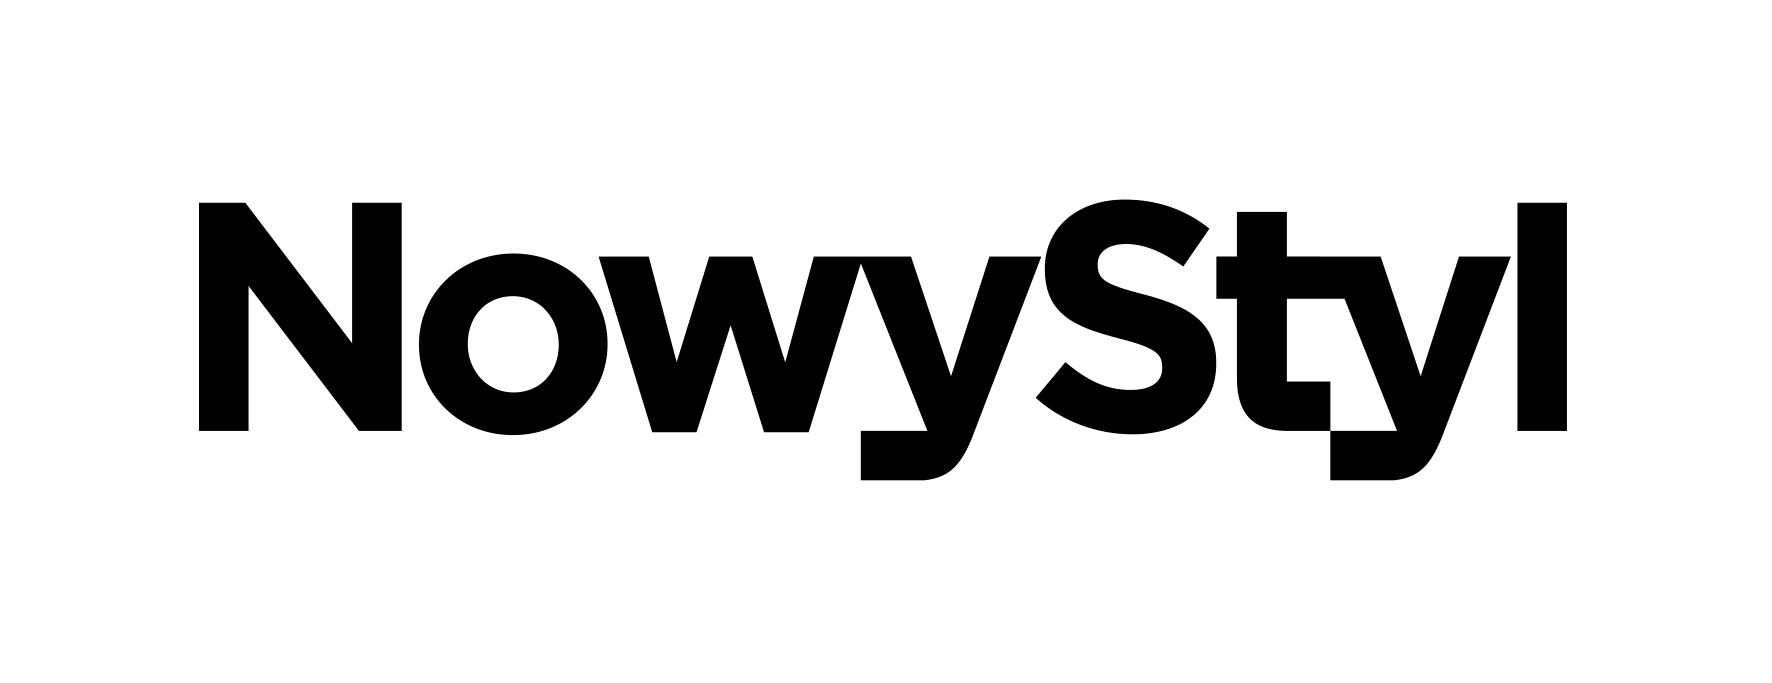 Nowy Styl Logo